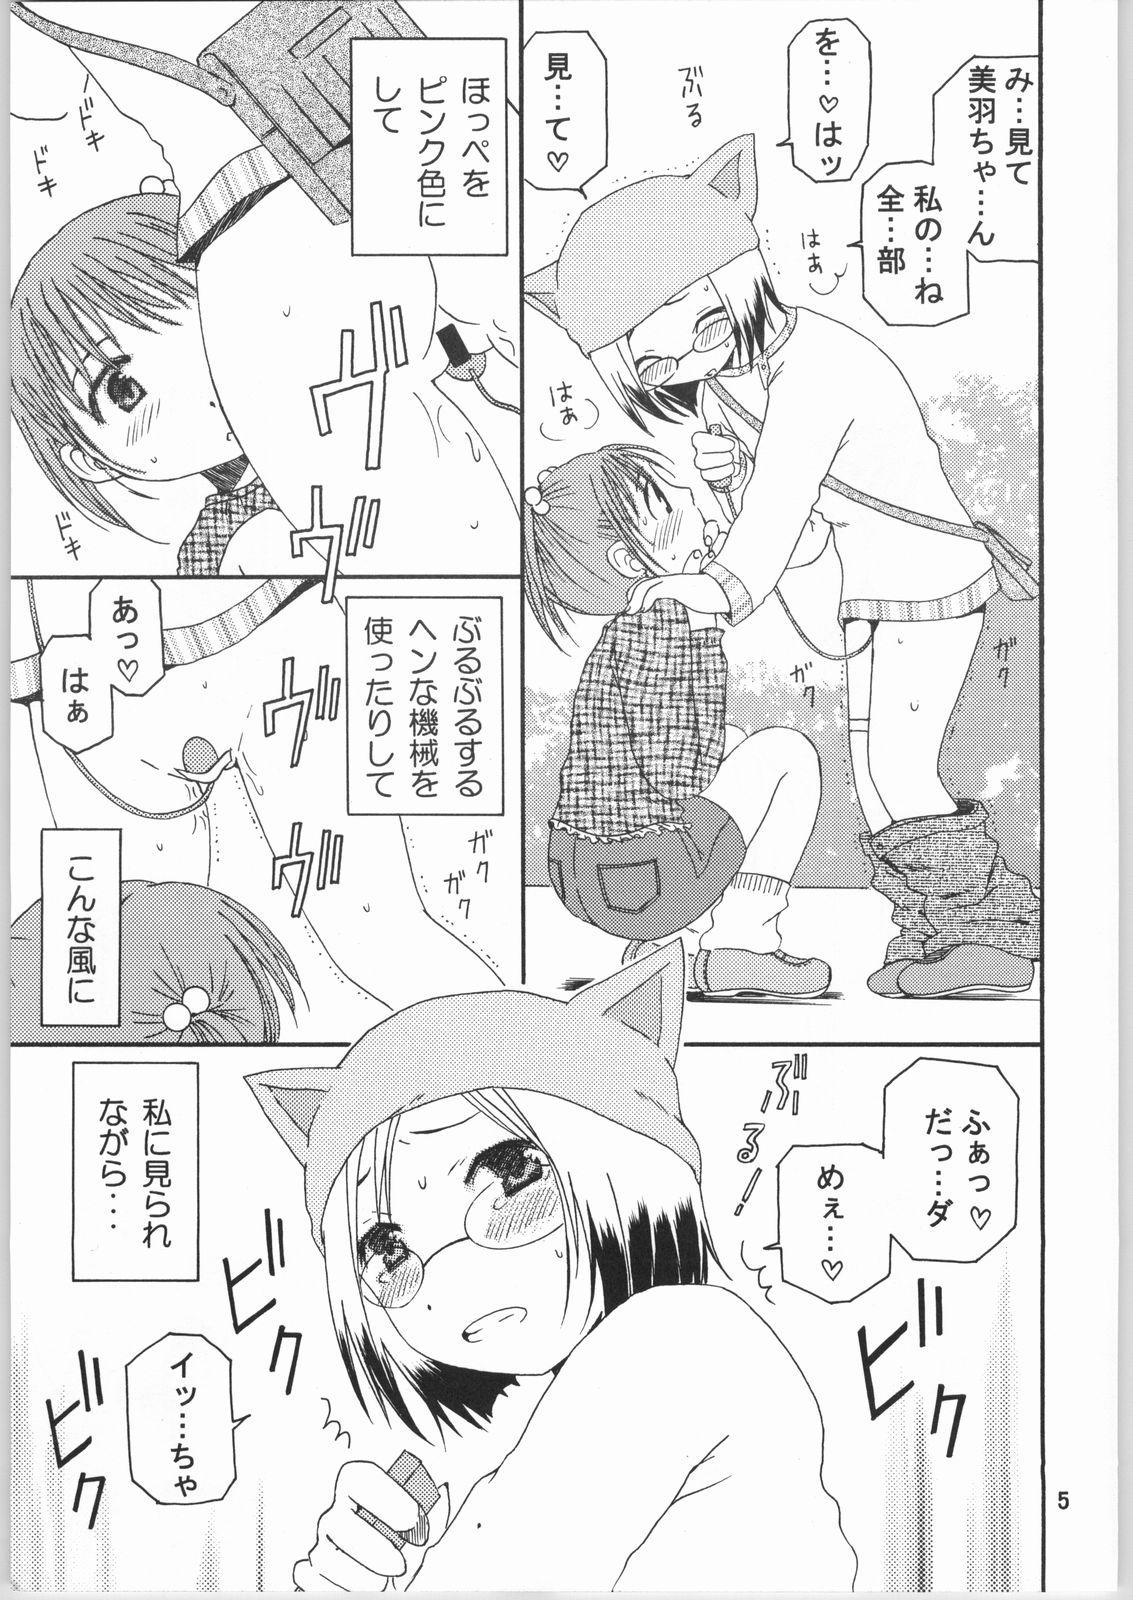 Money Strawberry Short Cake - Ichigo mashimaro Putaria - Page 4